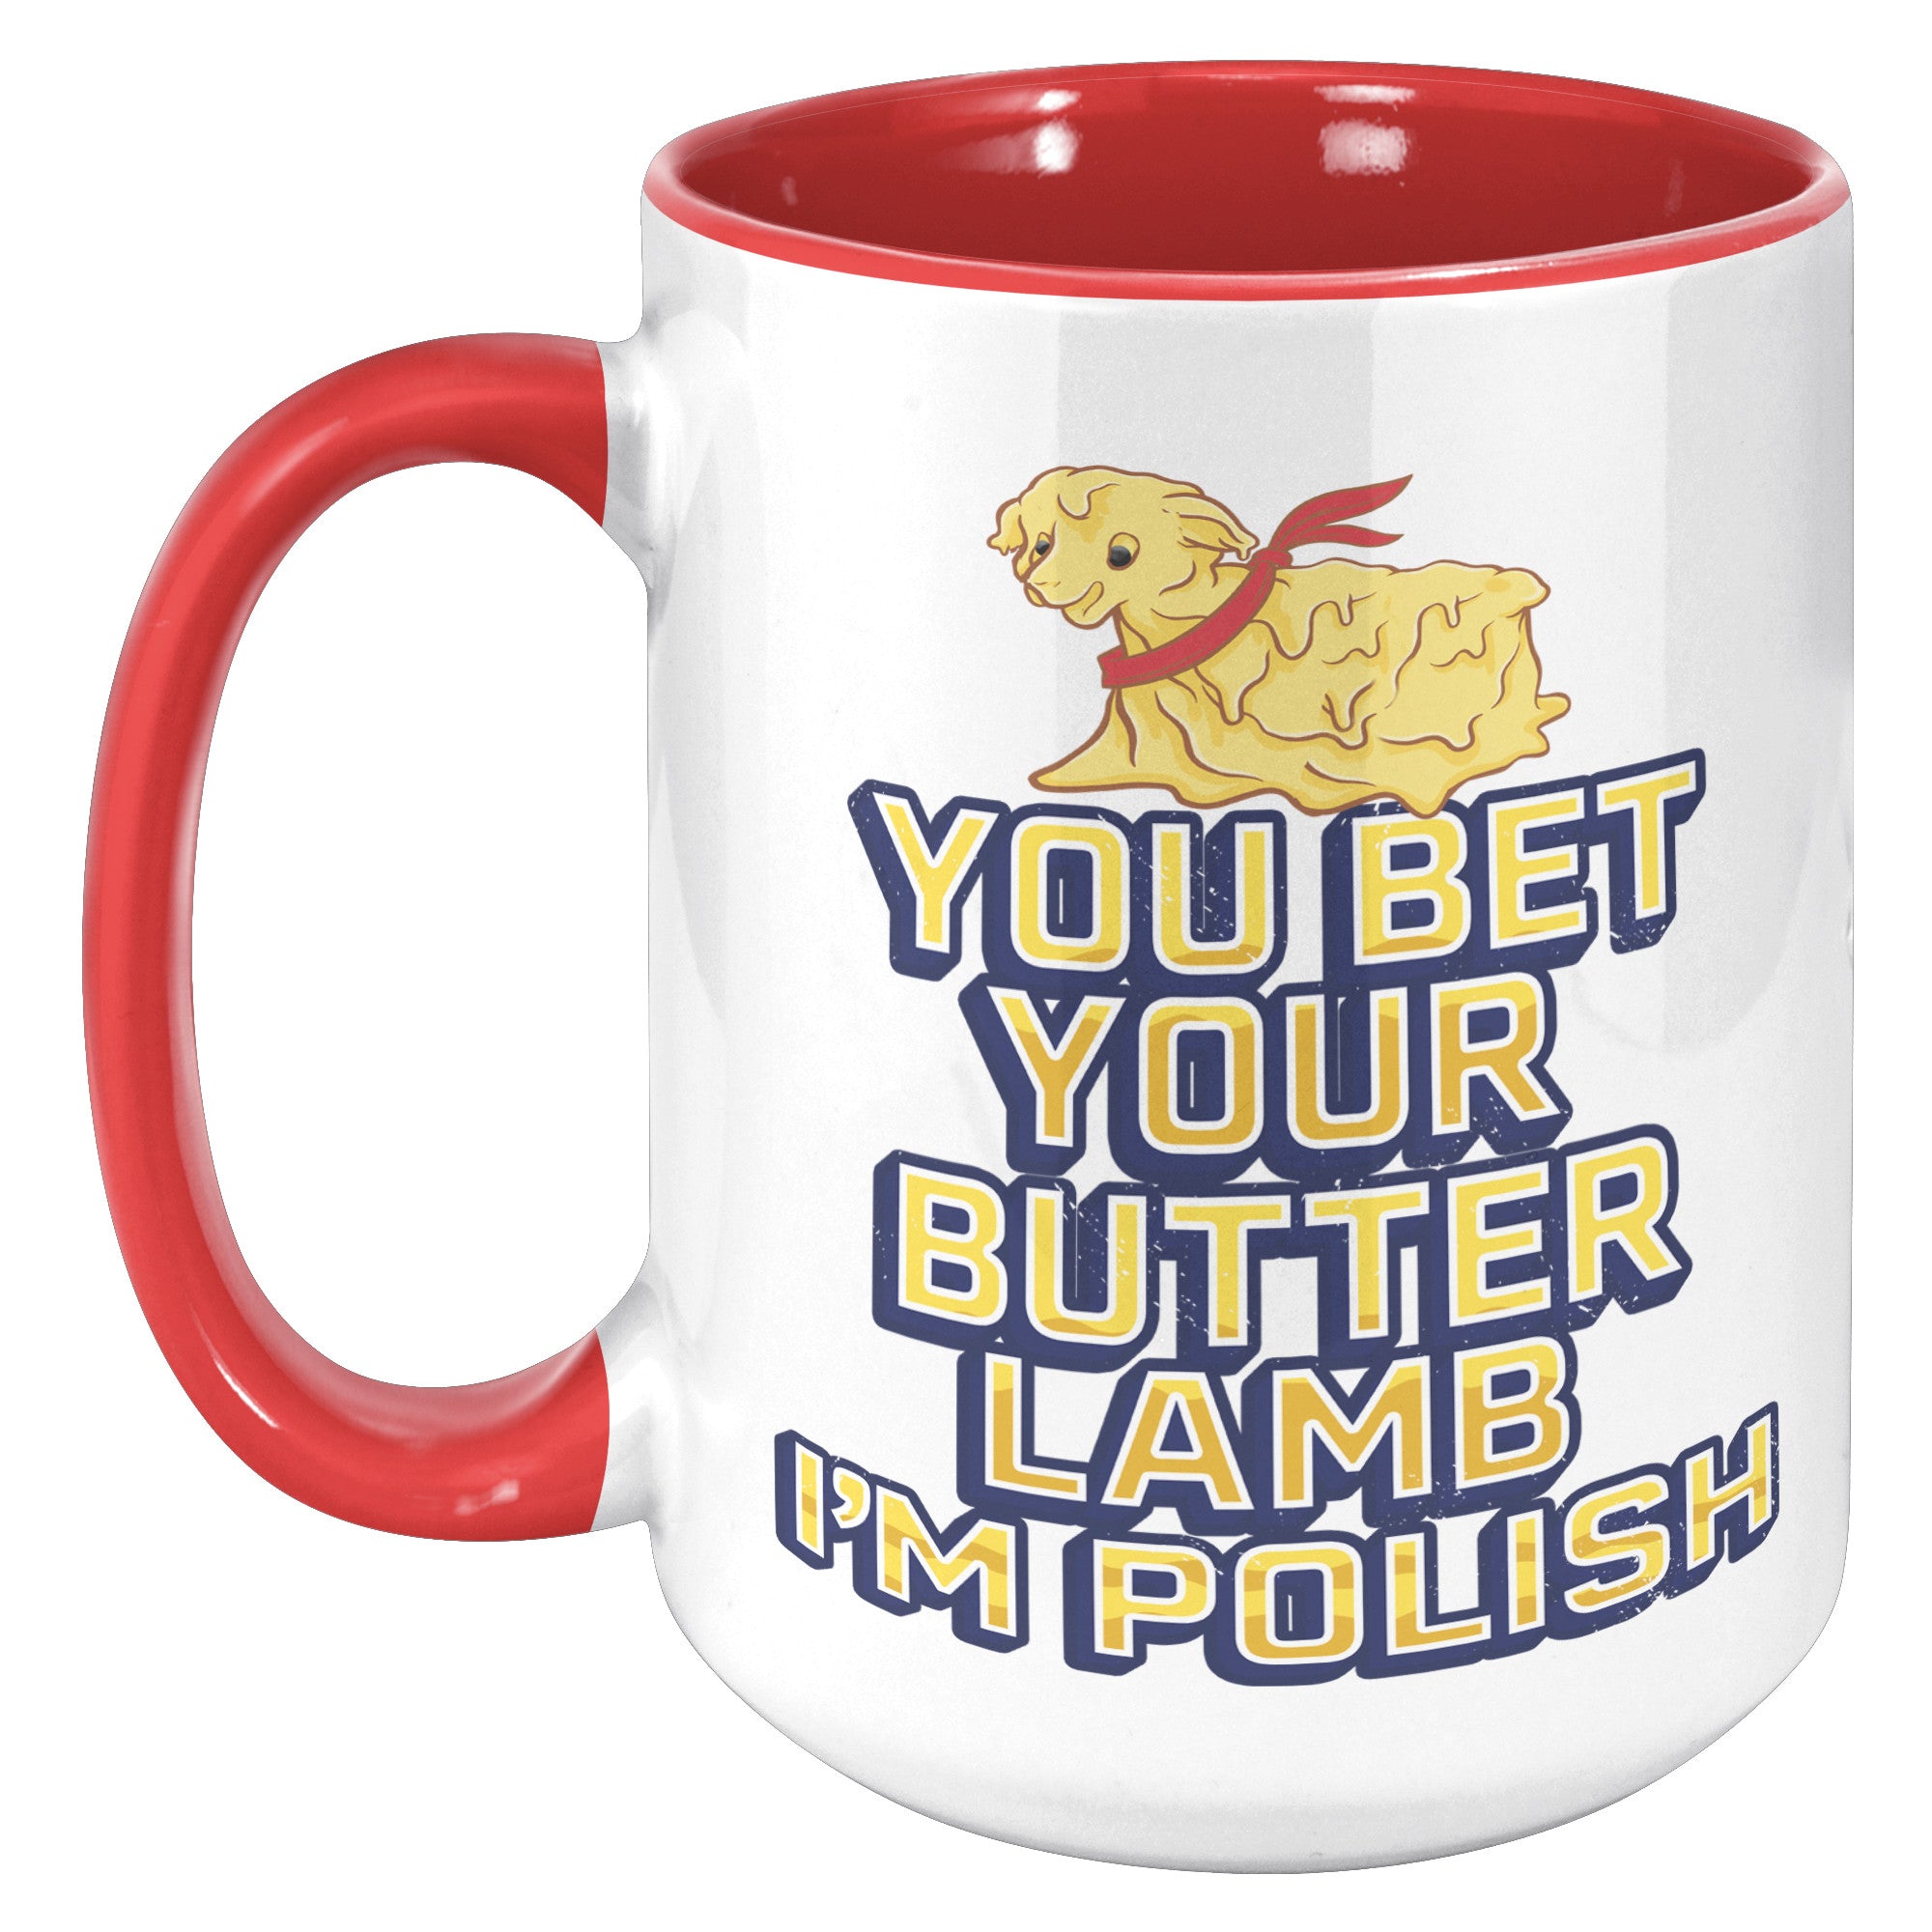 You Bet You're Butter Lamb I'm Polish Mug Ceramic Mugs teelaunch Red  